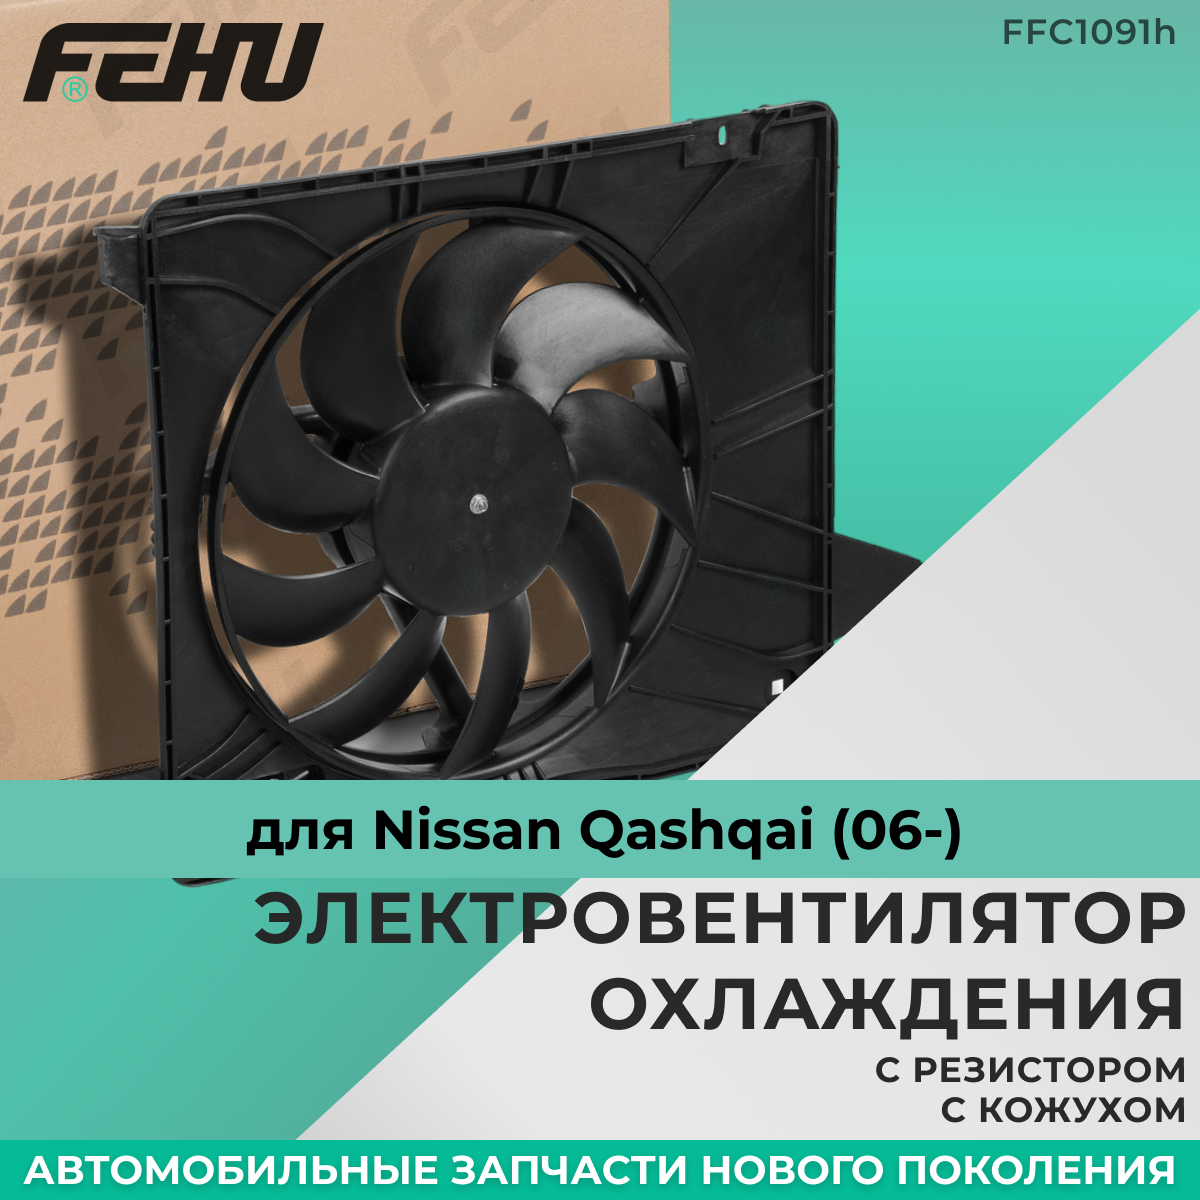 Электровентилятор охлаждения FEHU (феху) с кожухом с резистором Nissan Qashqai (06-)/Ниссан Кашкай арт.